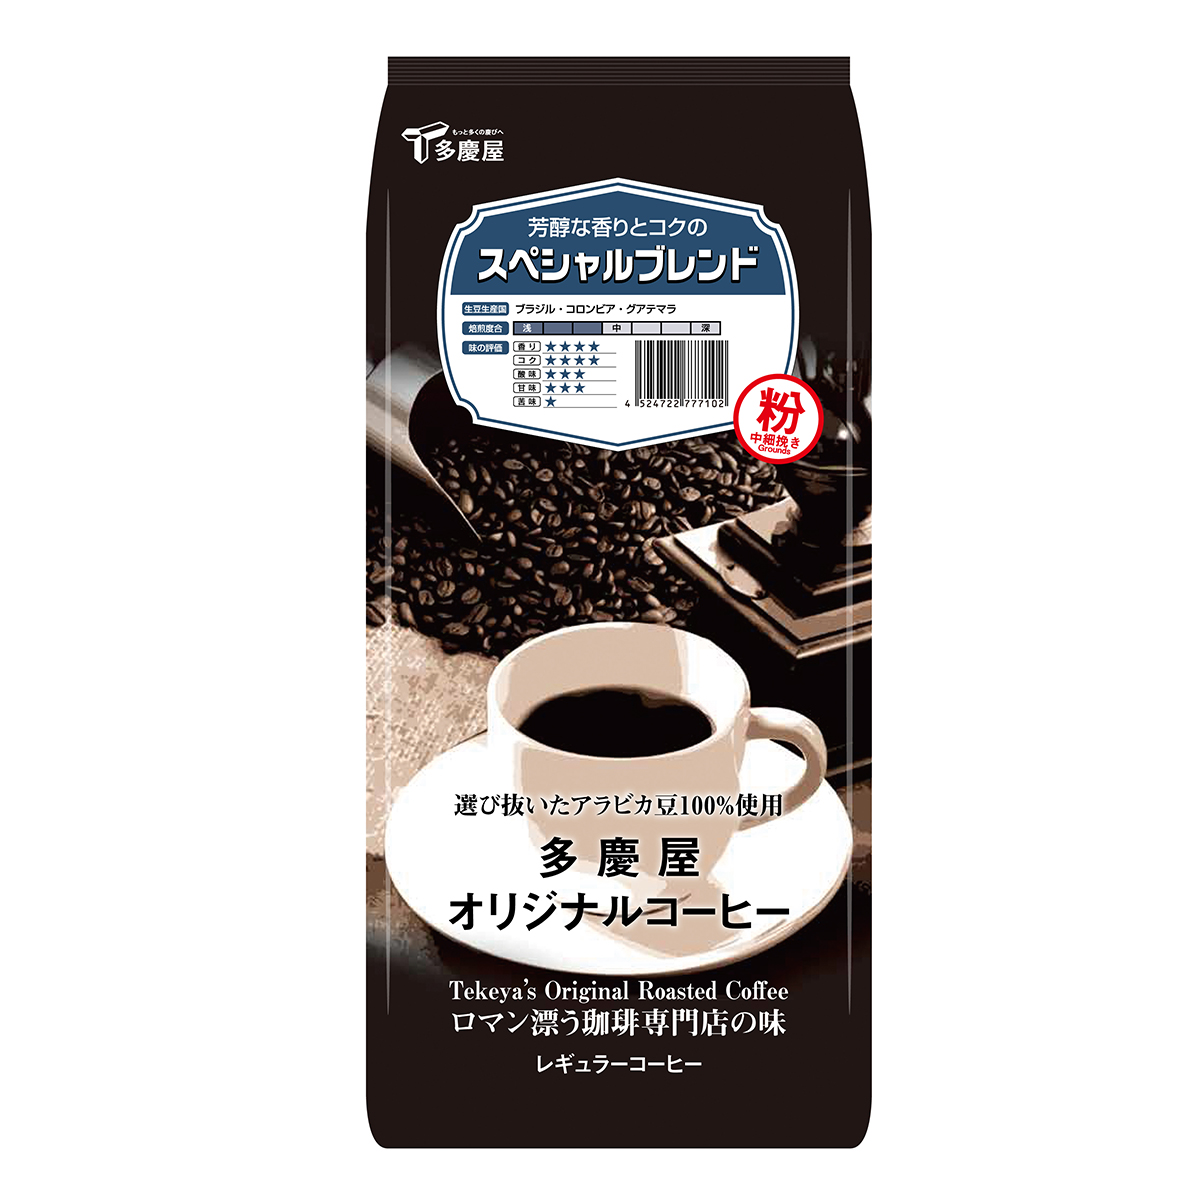 スペシャルブレンド粉400g　多慶屋オリジナルコーヒーコーヒー粉レギュラーコーヒー